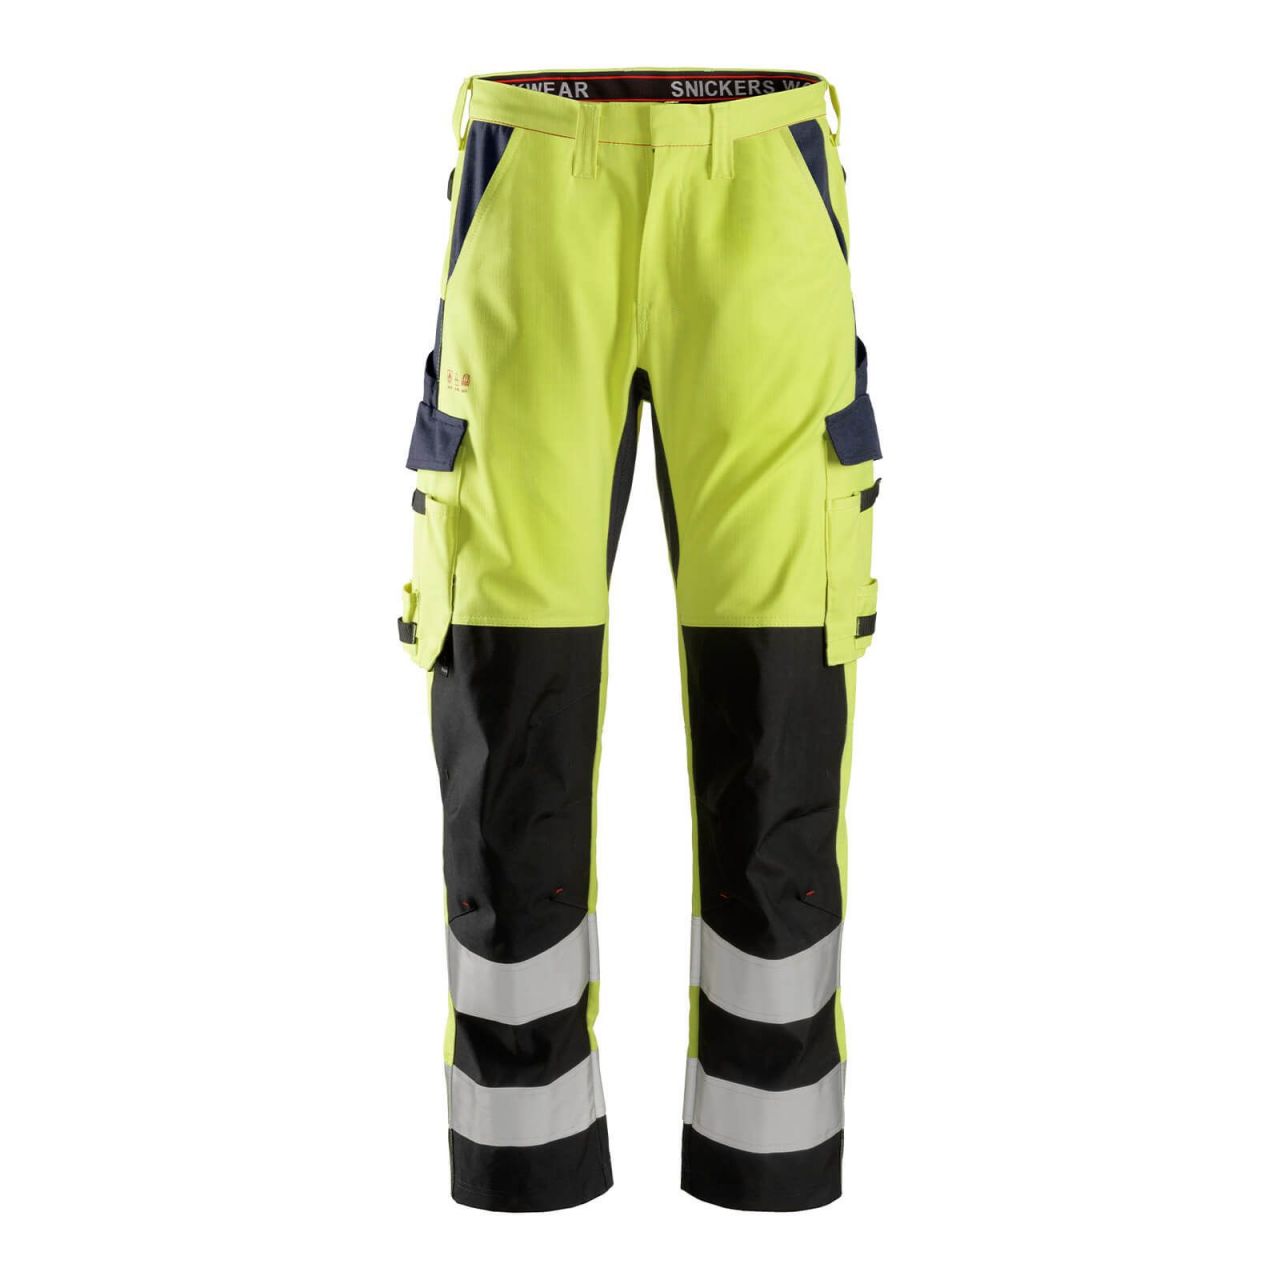 6364 Pantalones largos de trabajo de alta visibilidad clase 2 con espinilla reforzada ProtecWork amarillo-azul marino talla 108